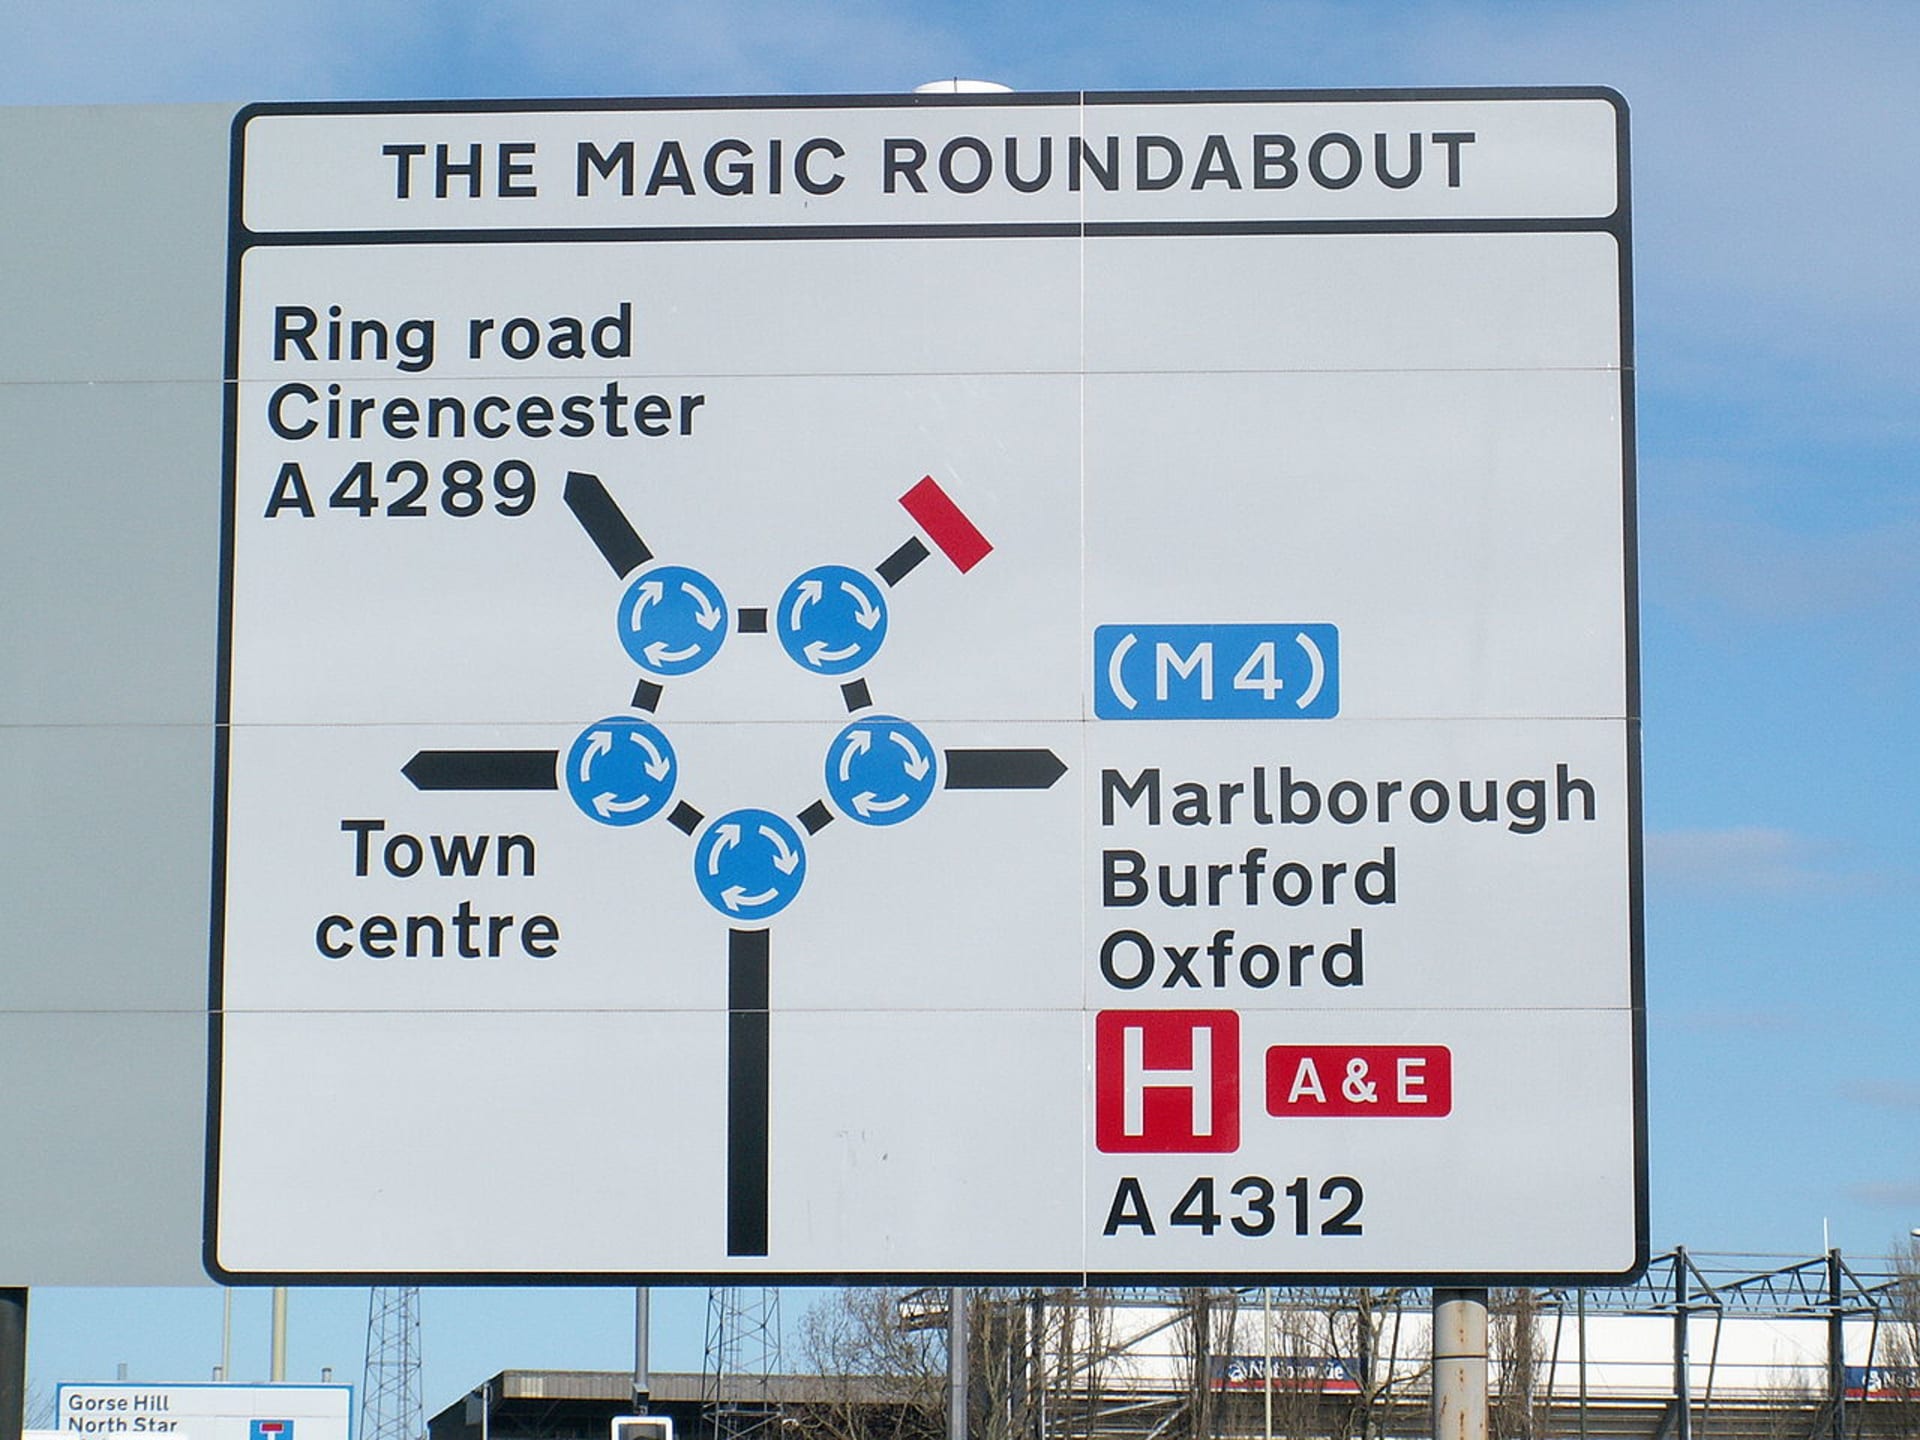 Takzvaný „magic raoundabout" je vlastně pět vzájemně propojených kruhových objezdů.